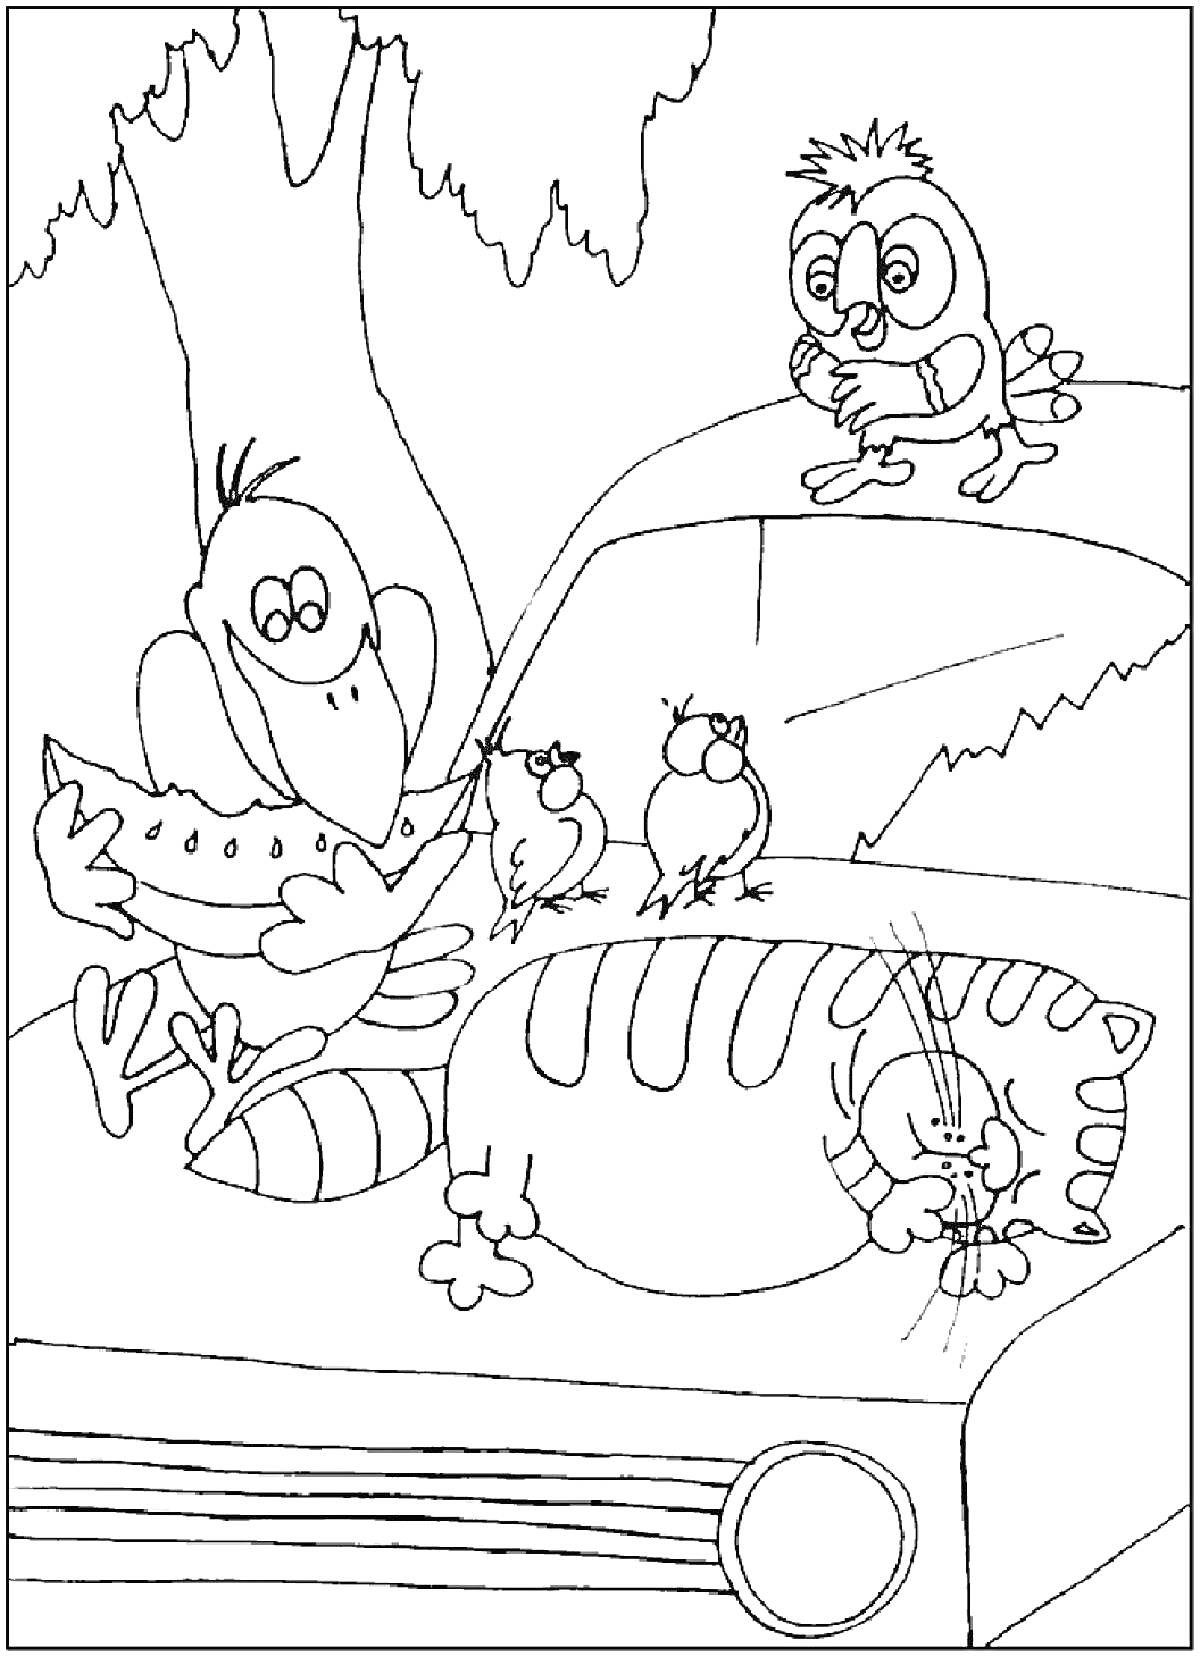 Раскраска Попугай Кеша, кот, автомобиль и птенцы на дереве